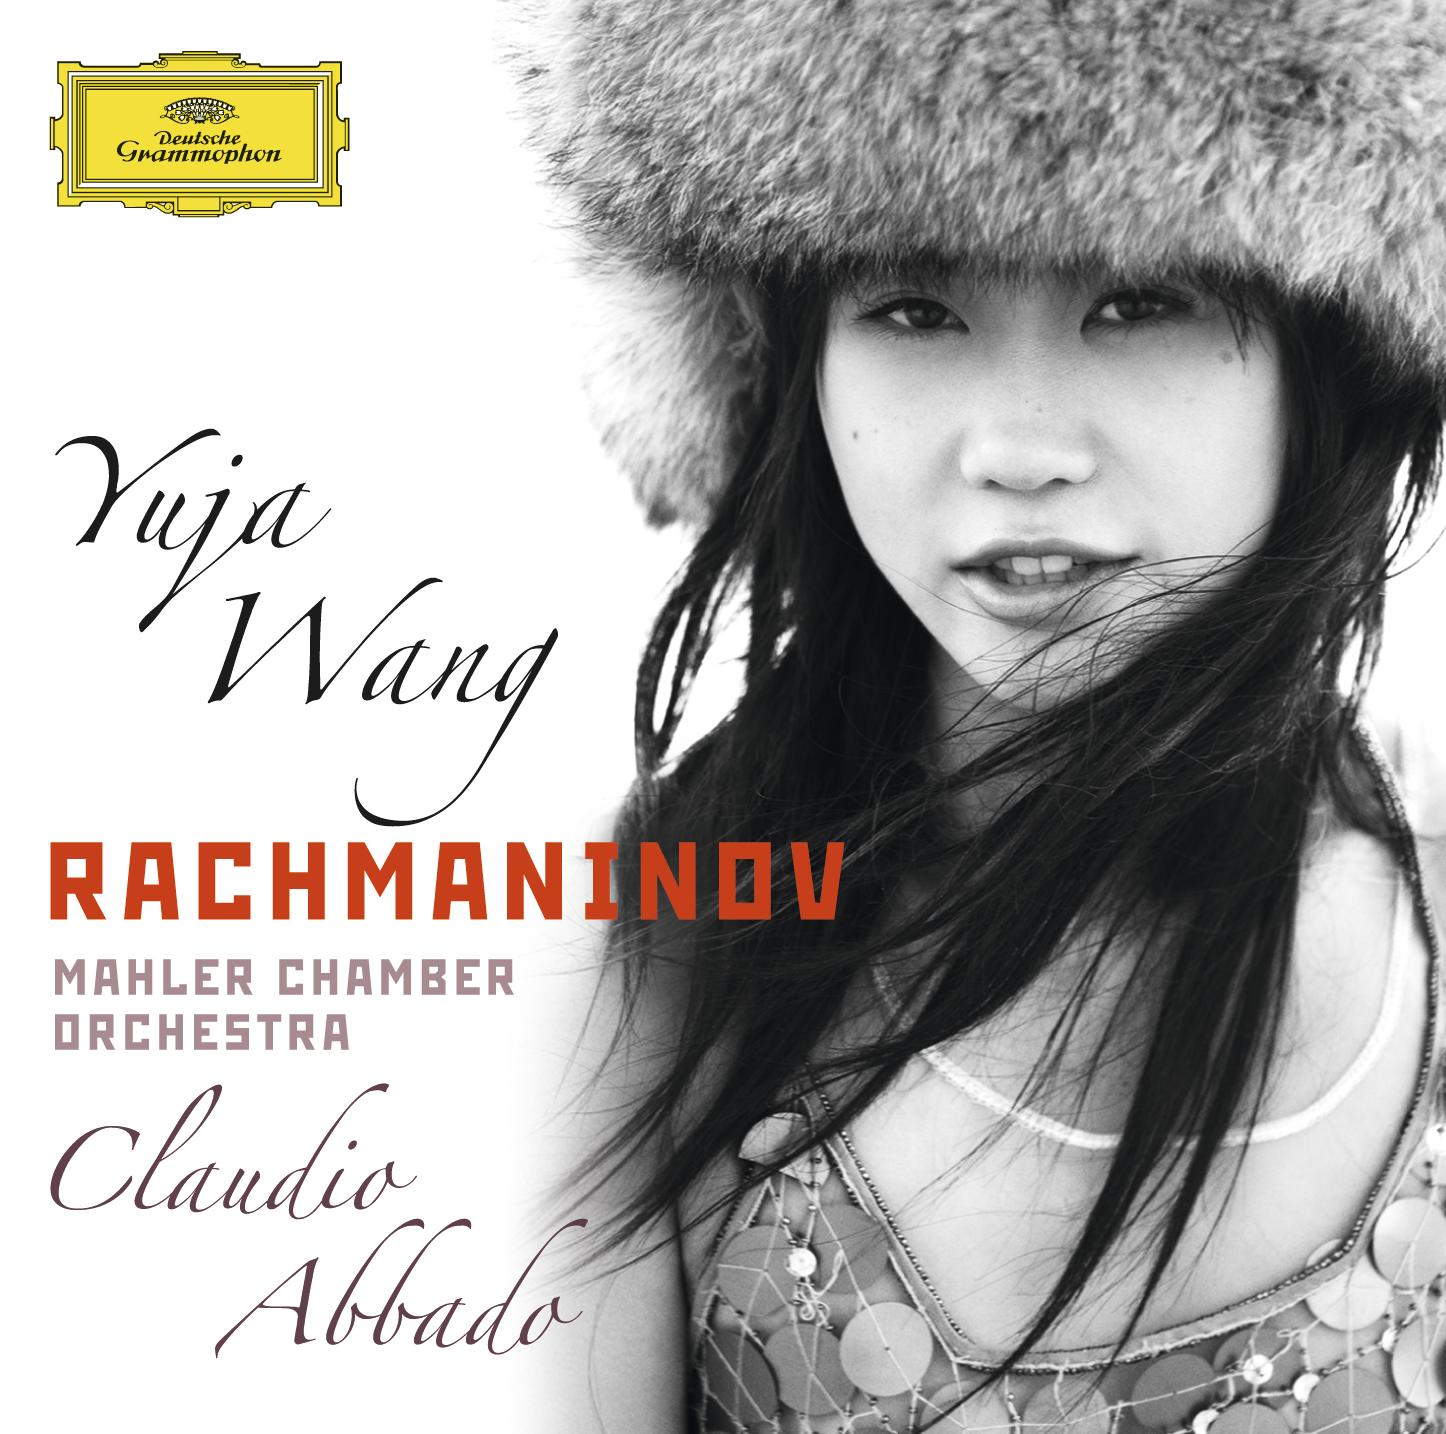 Rachmaninov Piano concerto No 2; Paganini Rhapsody